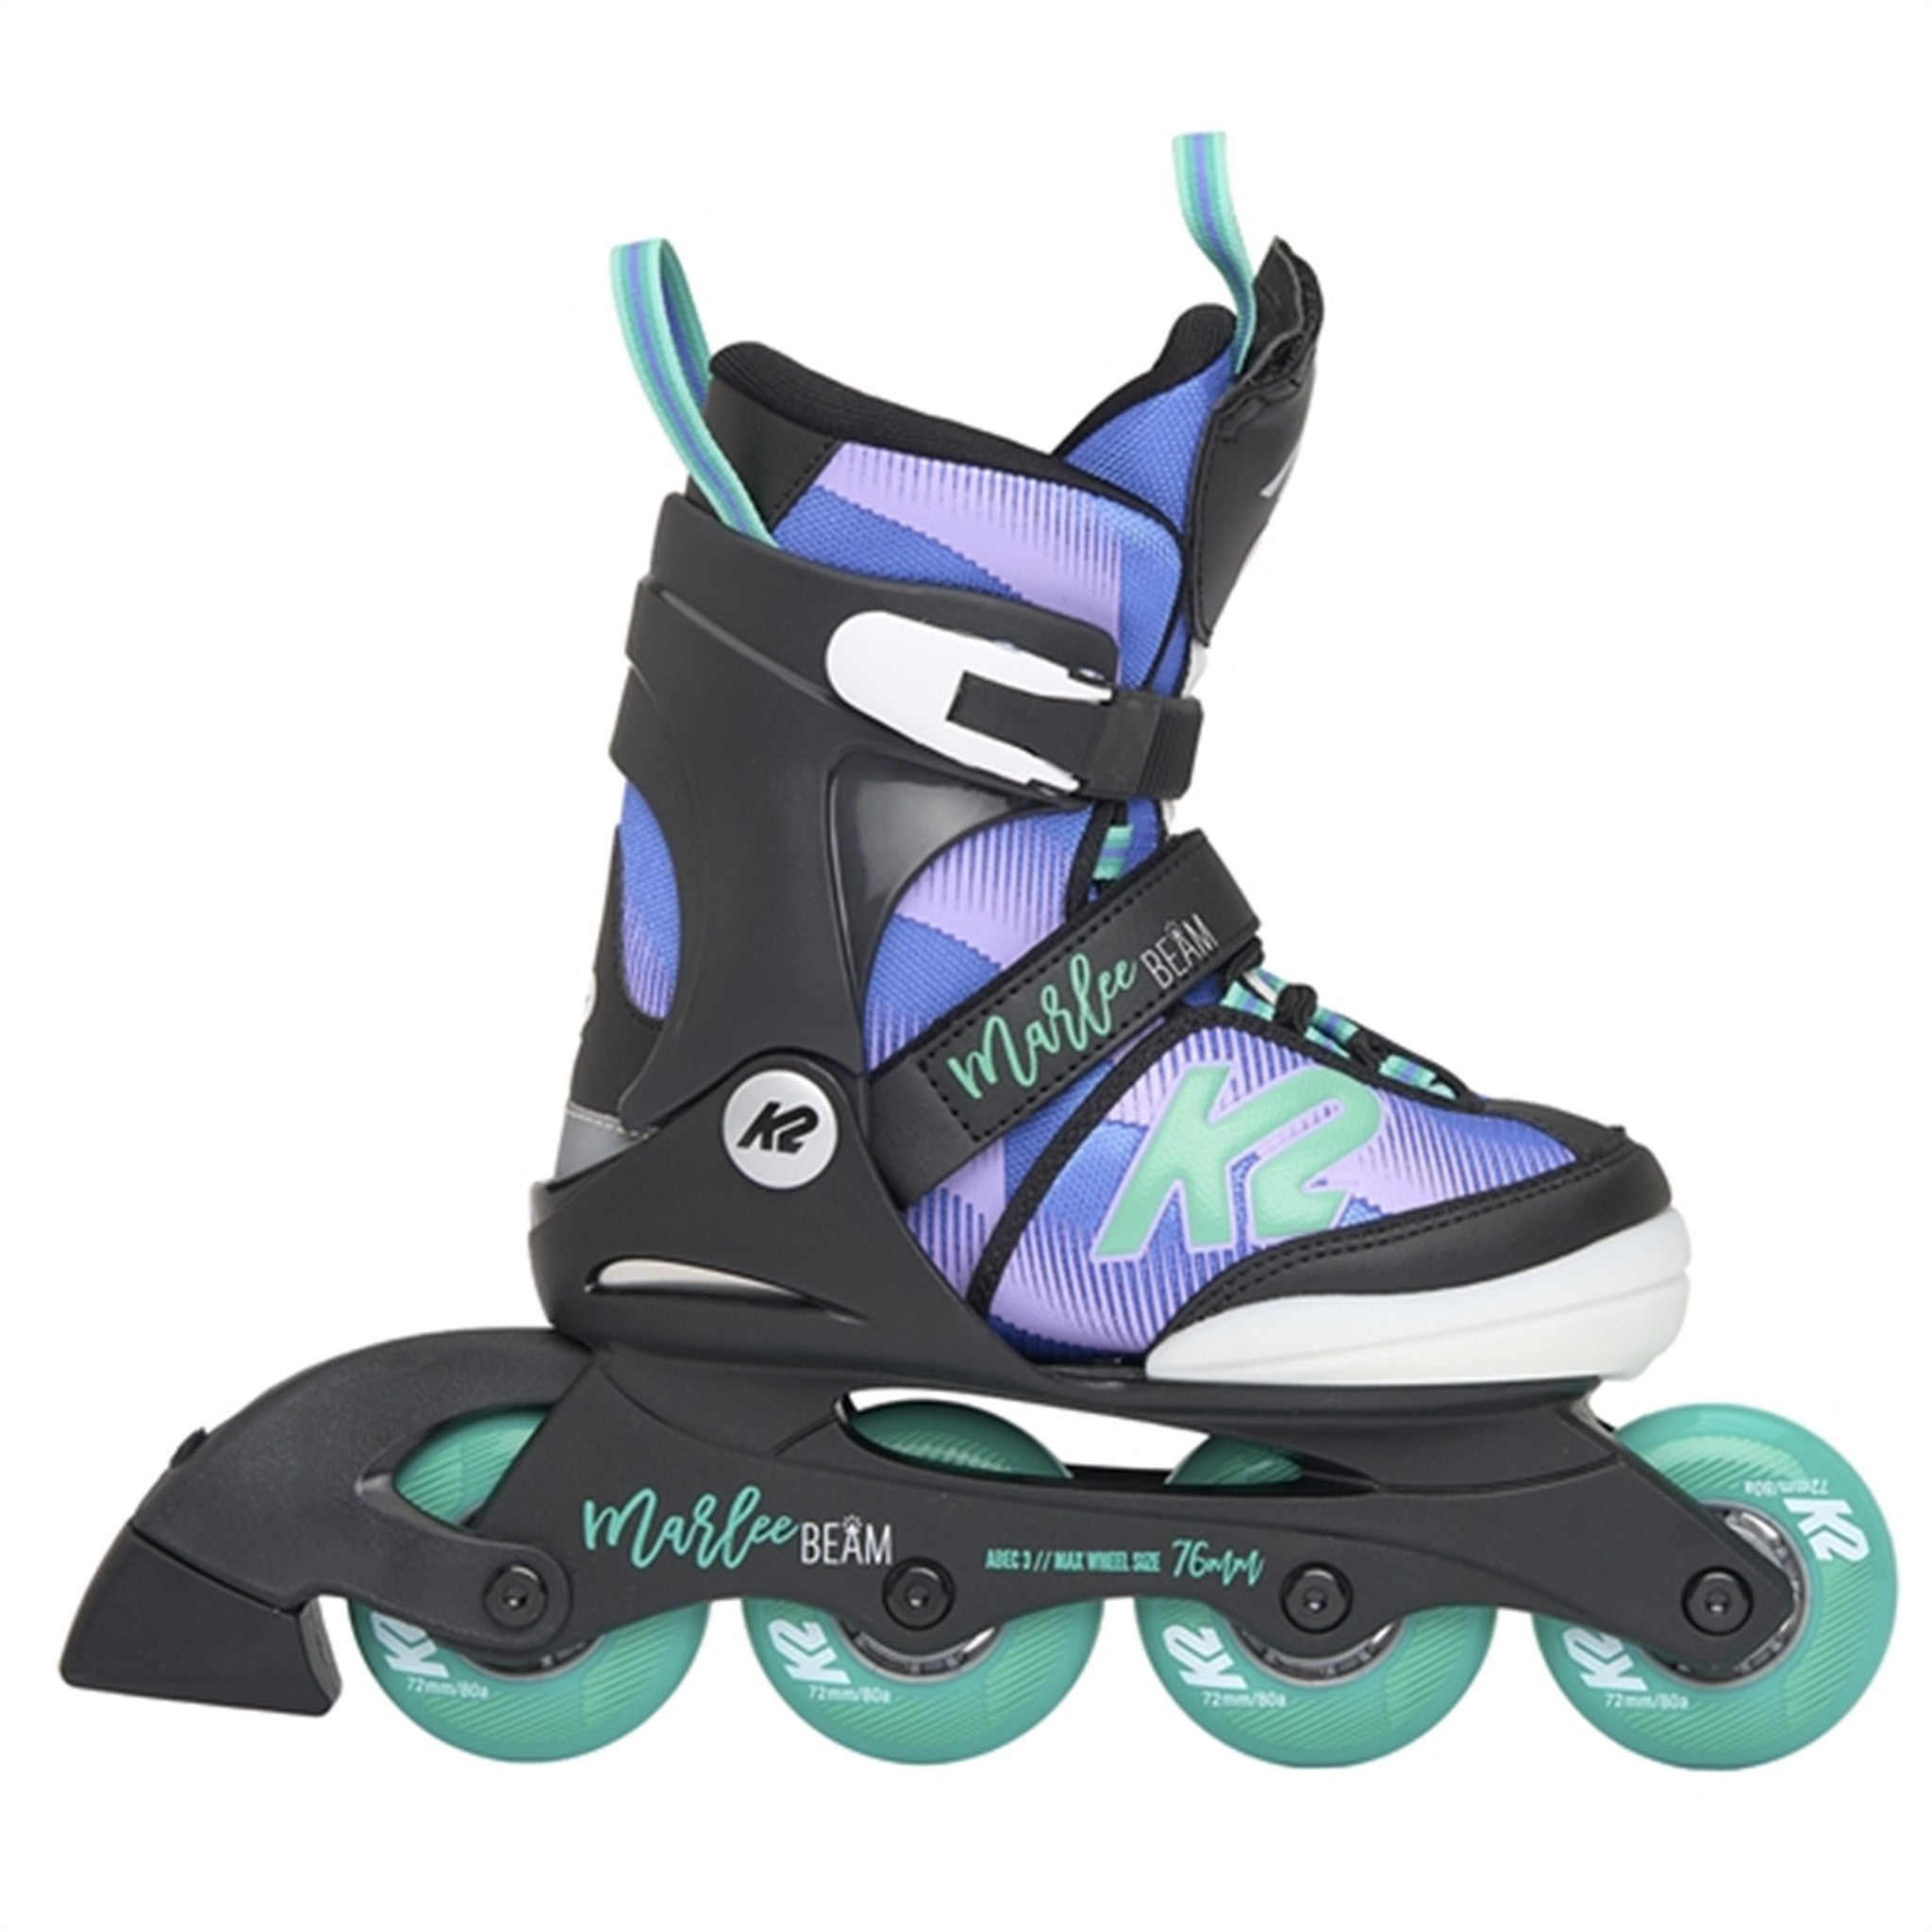 K2 Marlee Beam Inline Skate 2